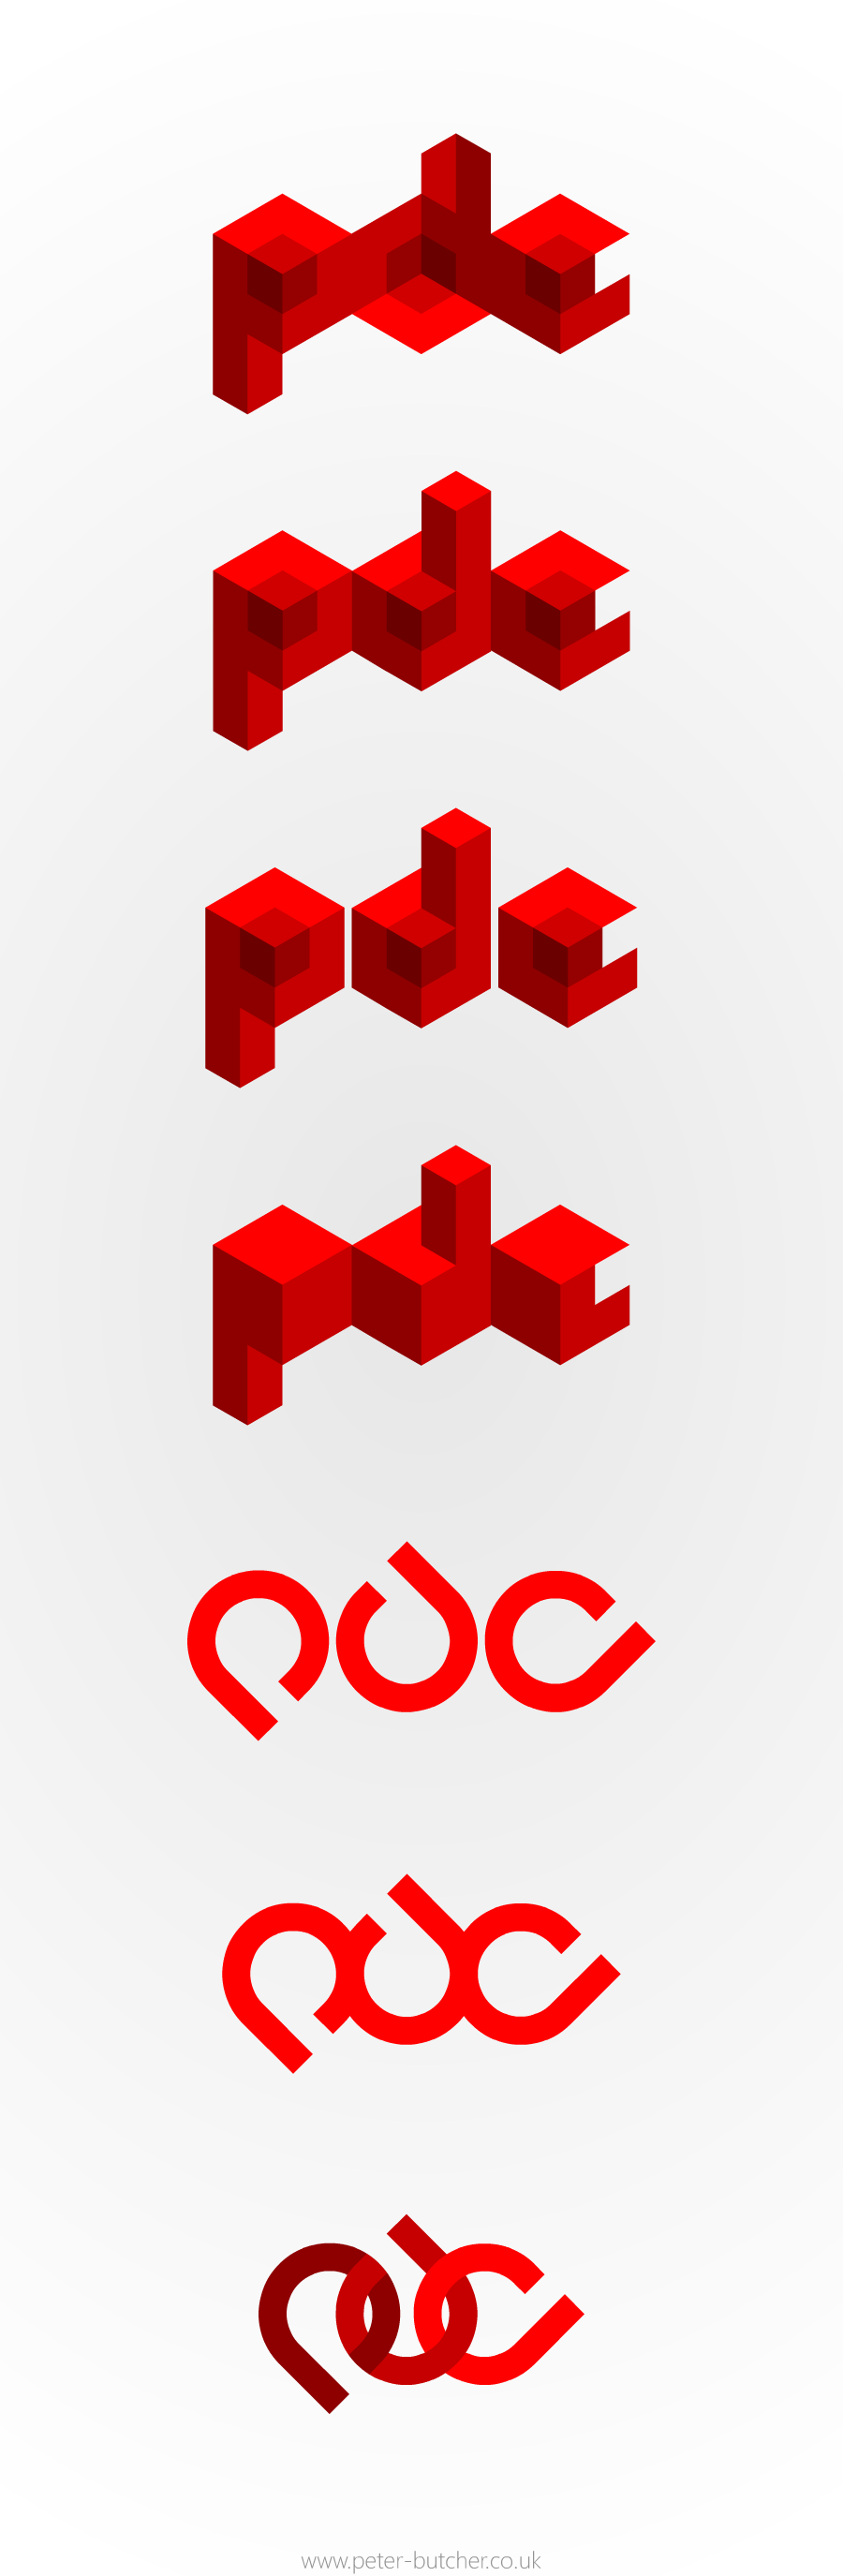 [Image: pdc-logos1.png]